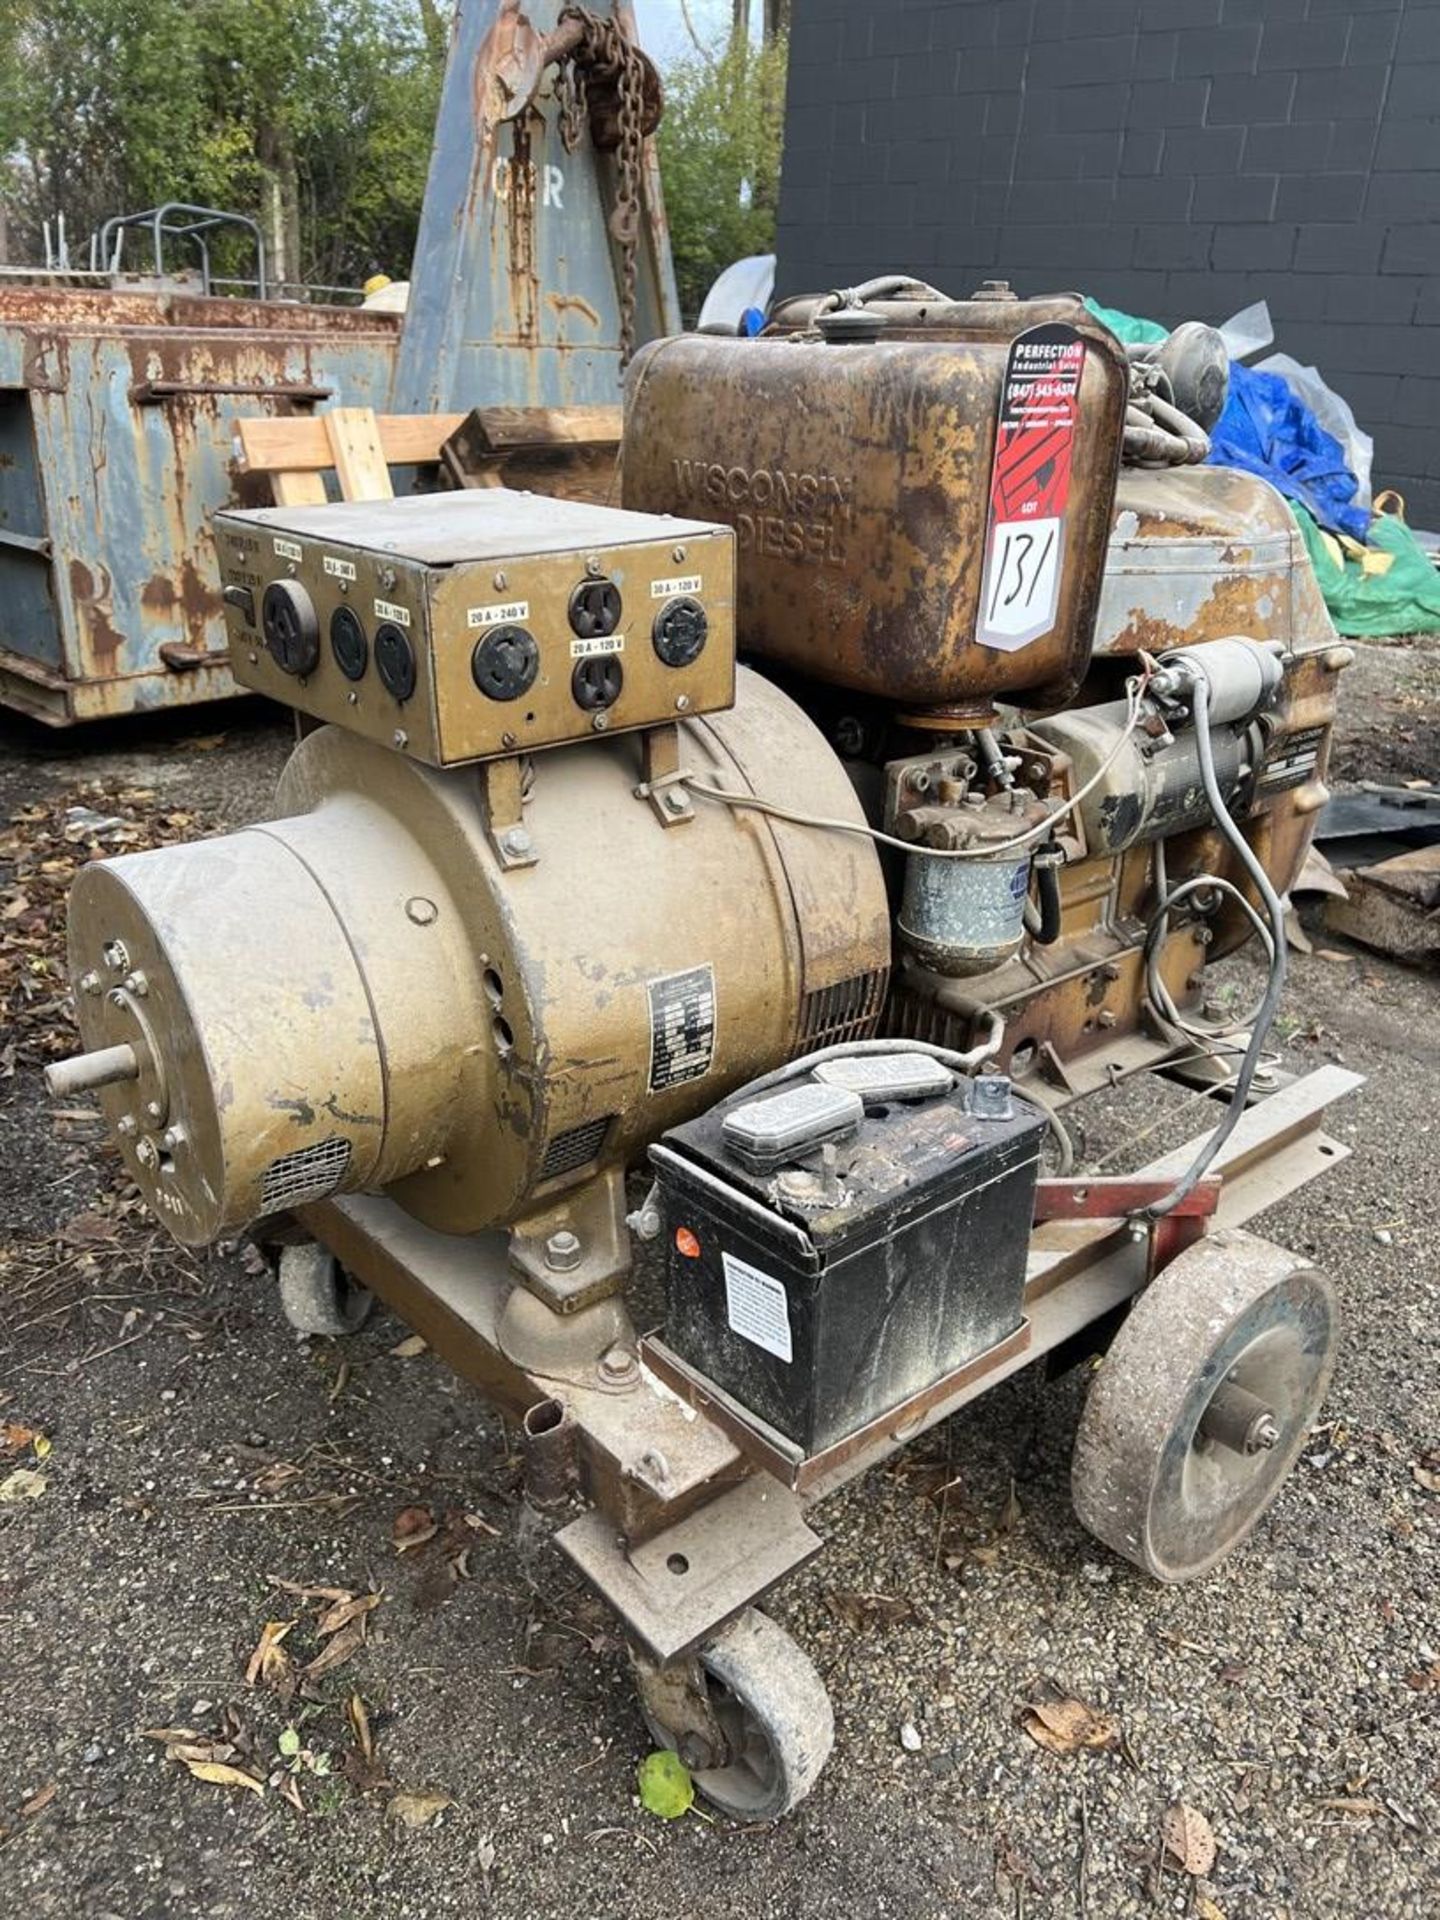 KURZ & ROOT E1535M773F Generator, s/n PU-286NH, 5 KW, 6.25 KVA, w/ Wisconsin Diesel Engine - Image 2 of 7